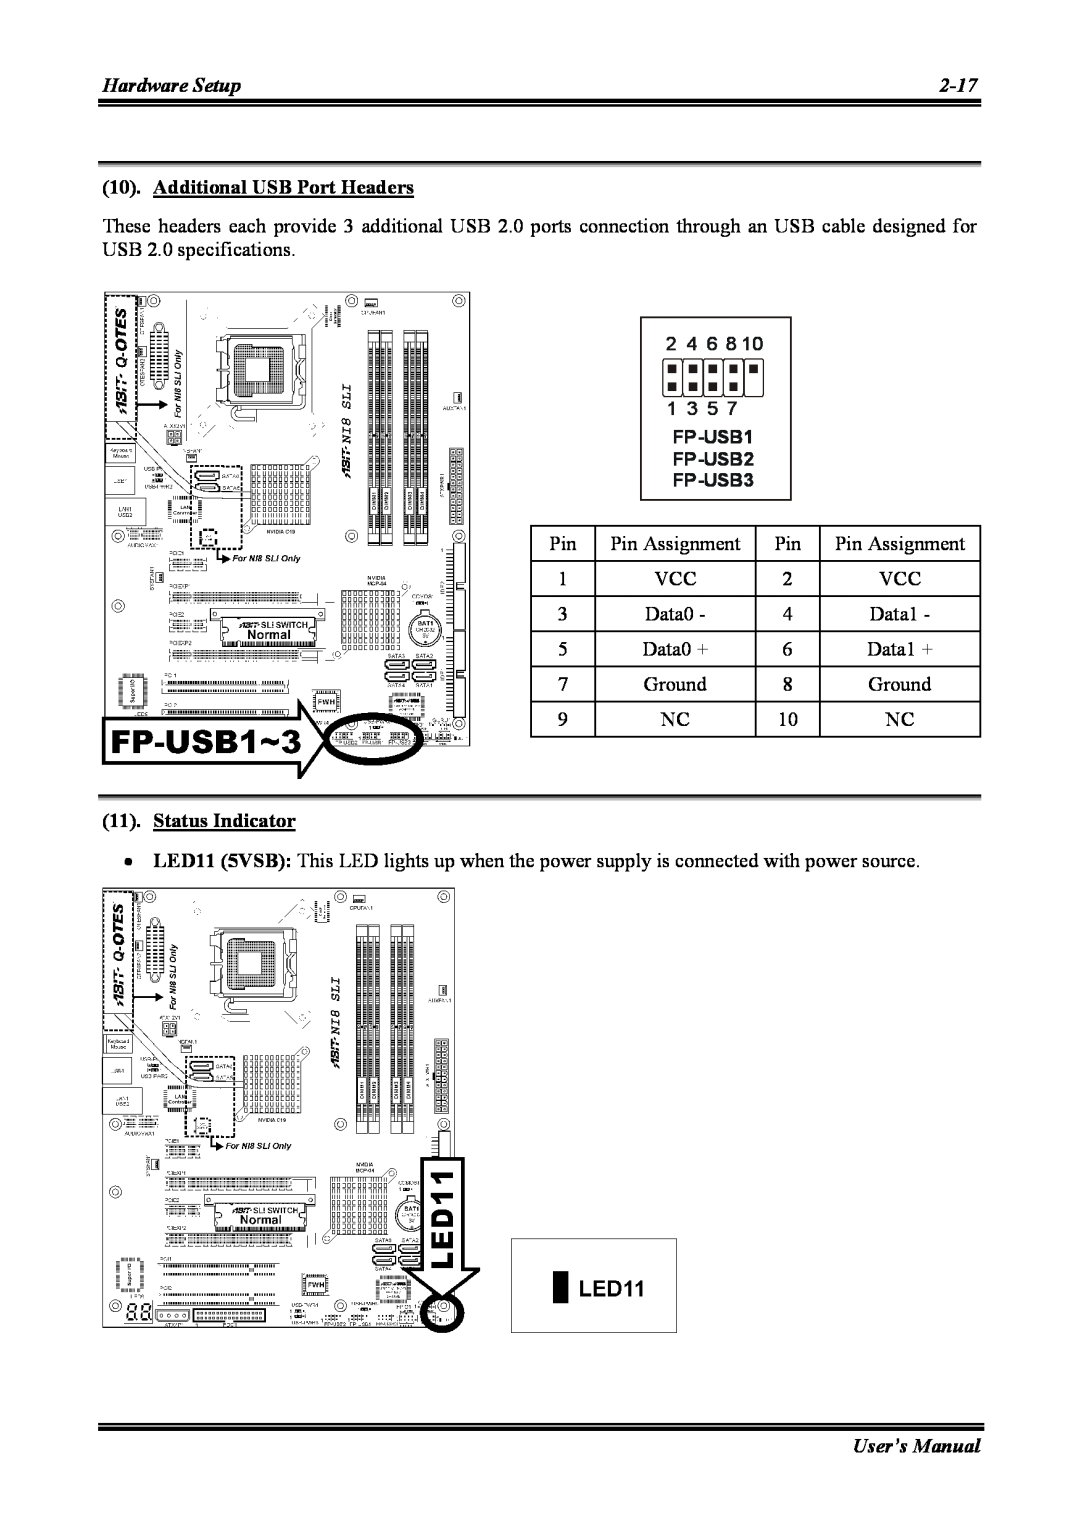 Abit NI8 SLI user manual Additional USB Port Headers, Status Indicator, FP-USB1 FP-USB2 FP-USB3 